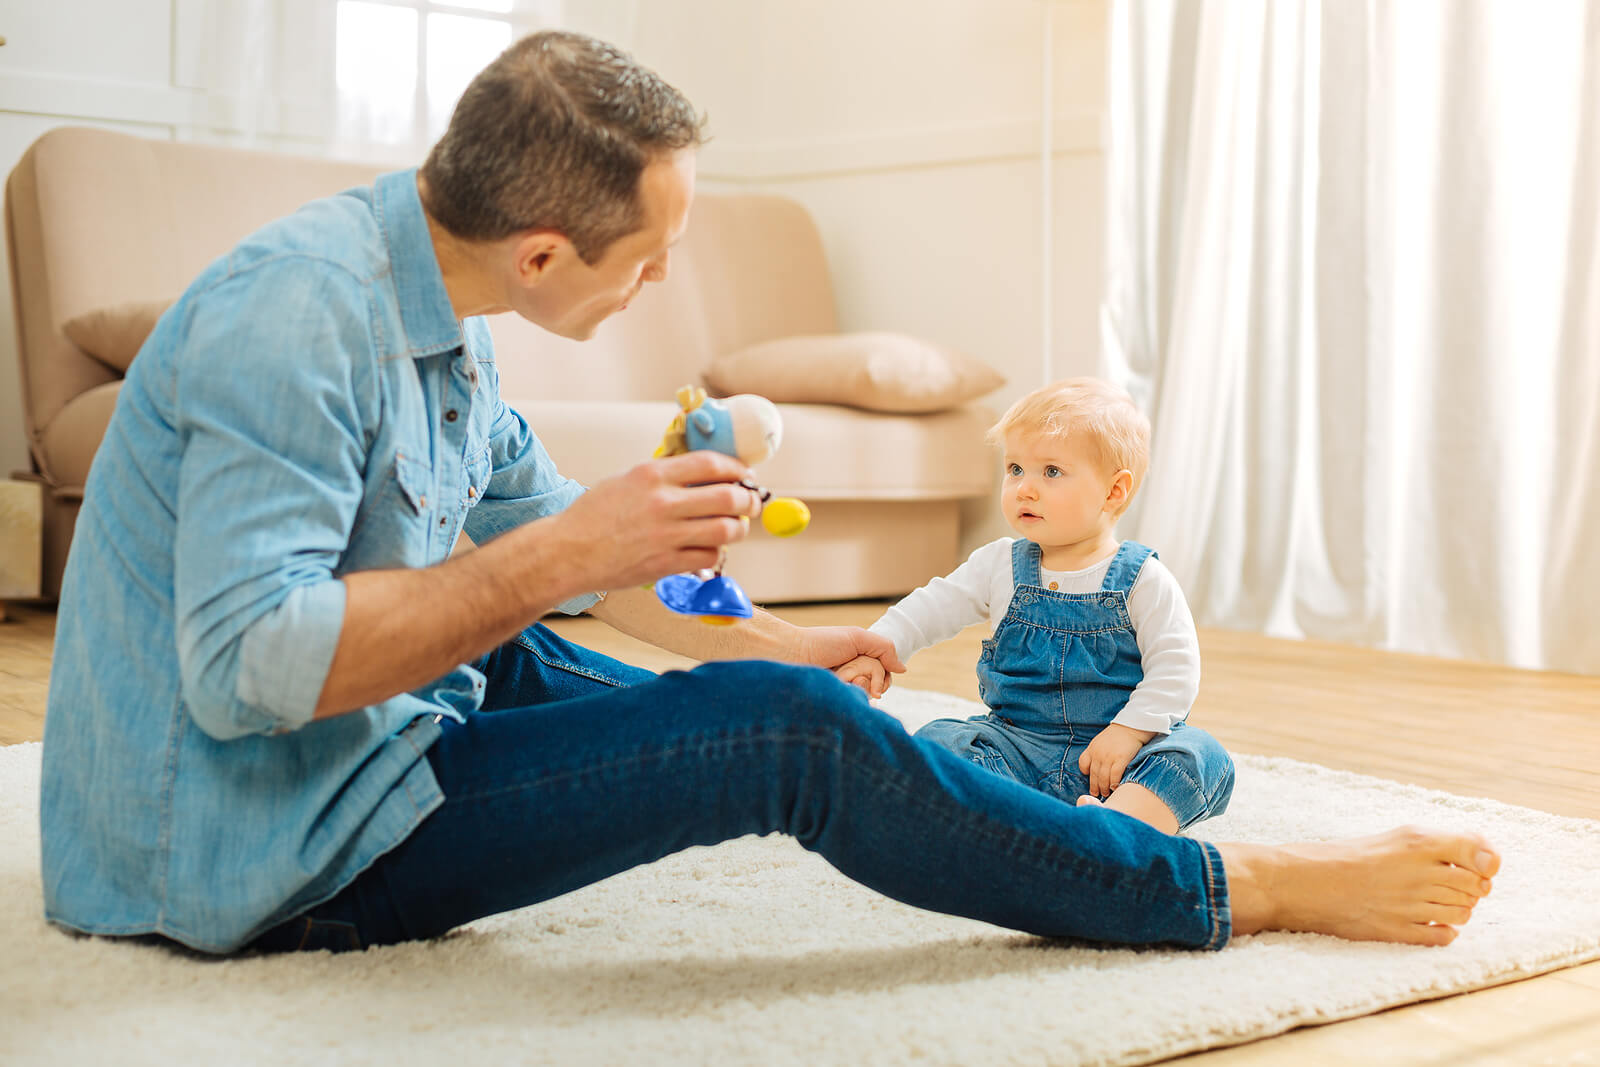 Papá comunicándose con su bebé y hablando con él usando técnicas para fortalecer la capacidad comunicativa del niño.